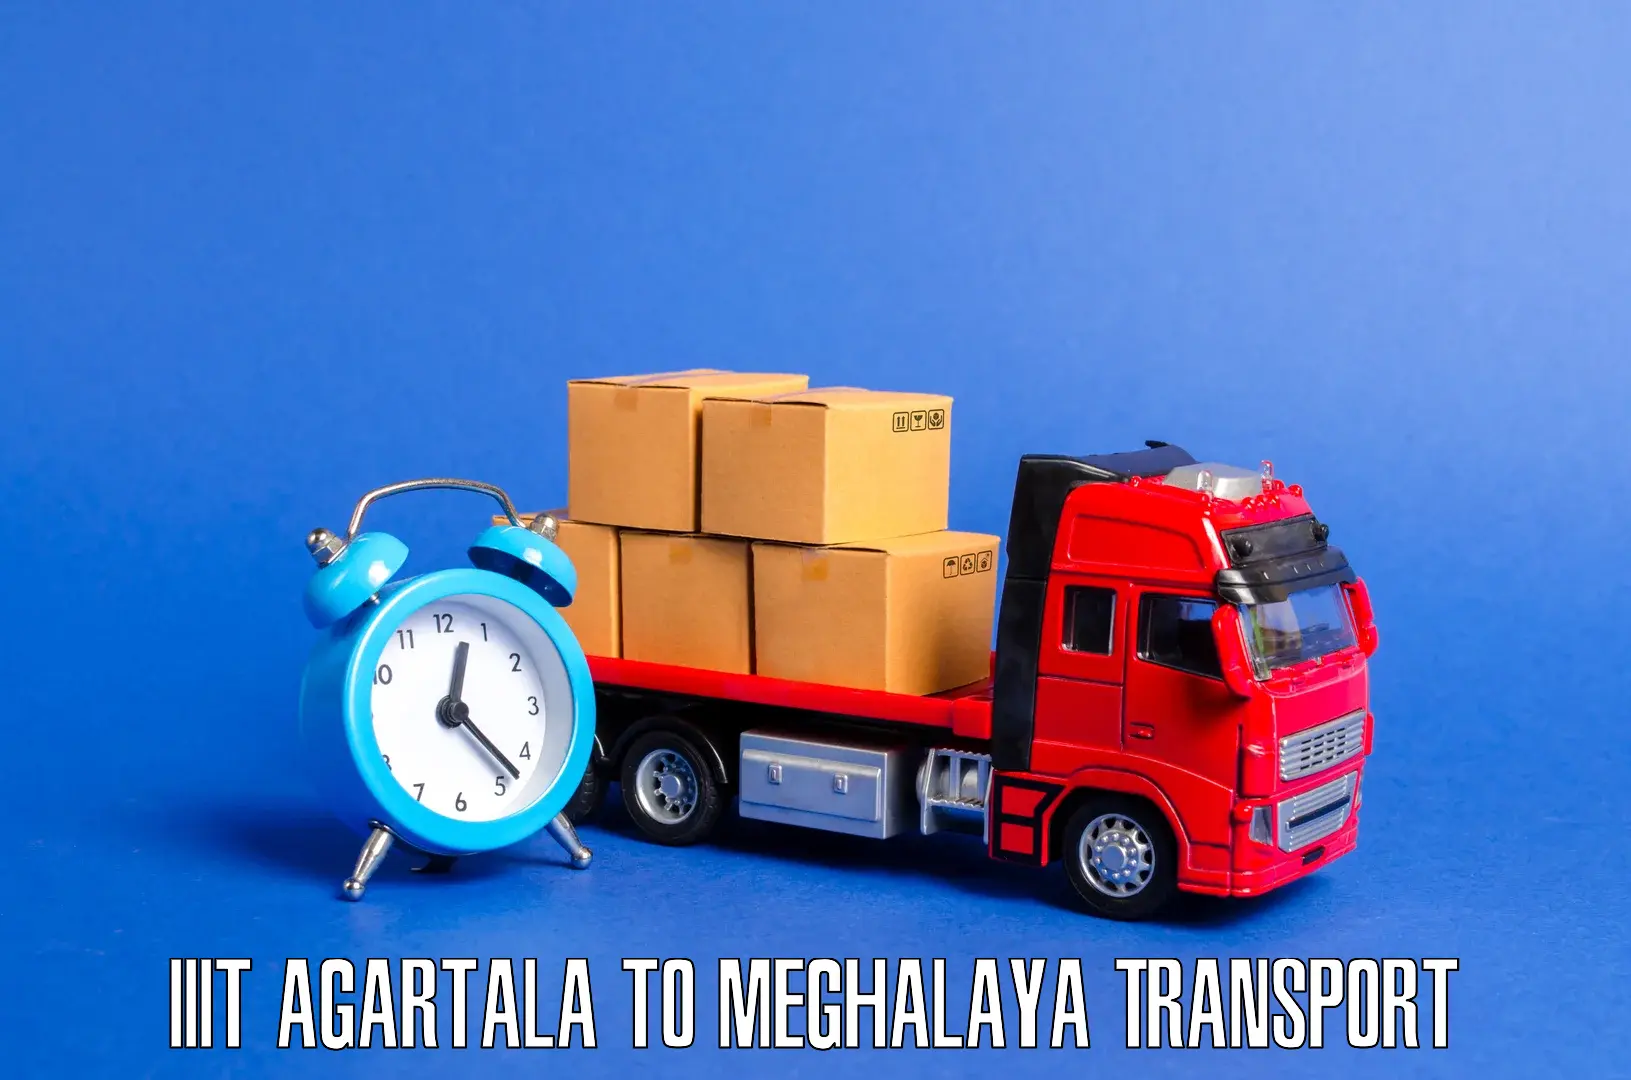 Interstate transport services IIIT Agartala to Jaintia Hills